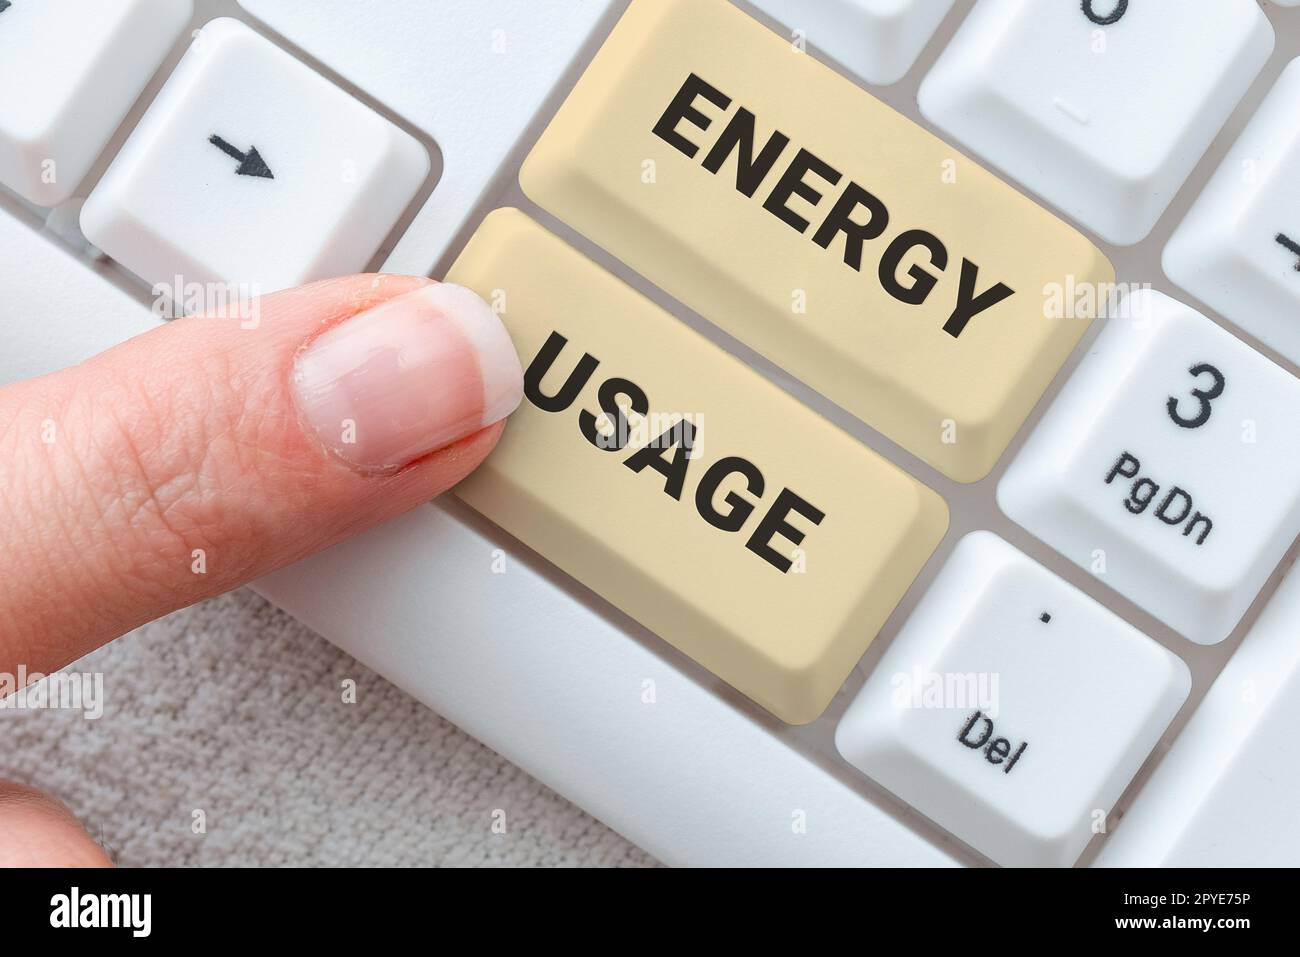 Simbolo di testo che mostra l'utilizzo di energia. Approccio aziendale quantità di energia consumata o utilizzata in un processo o sistema Foto Stock